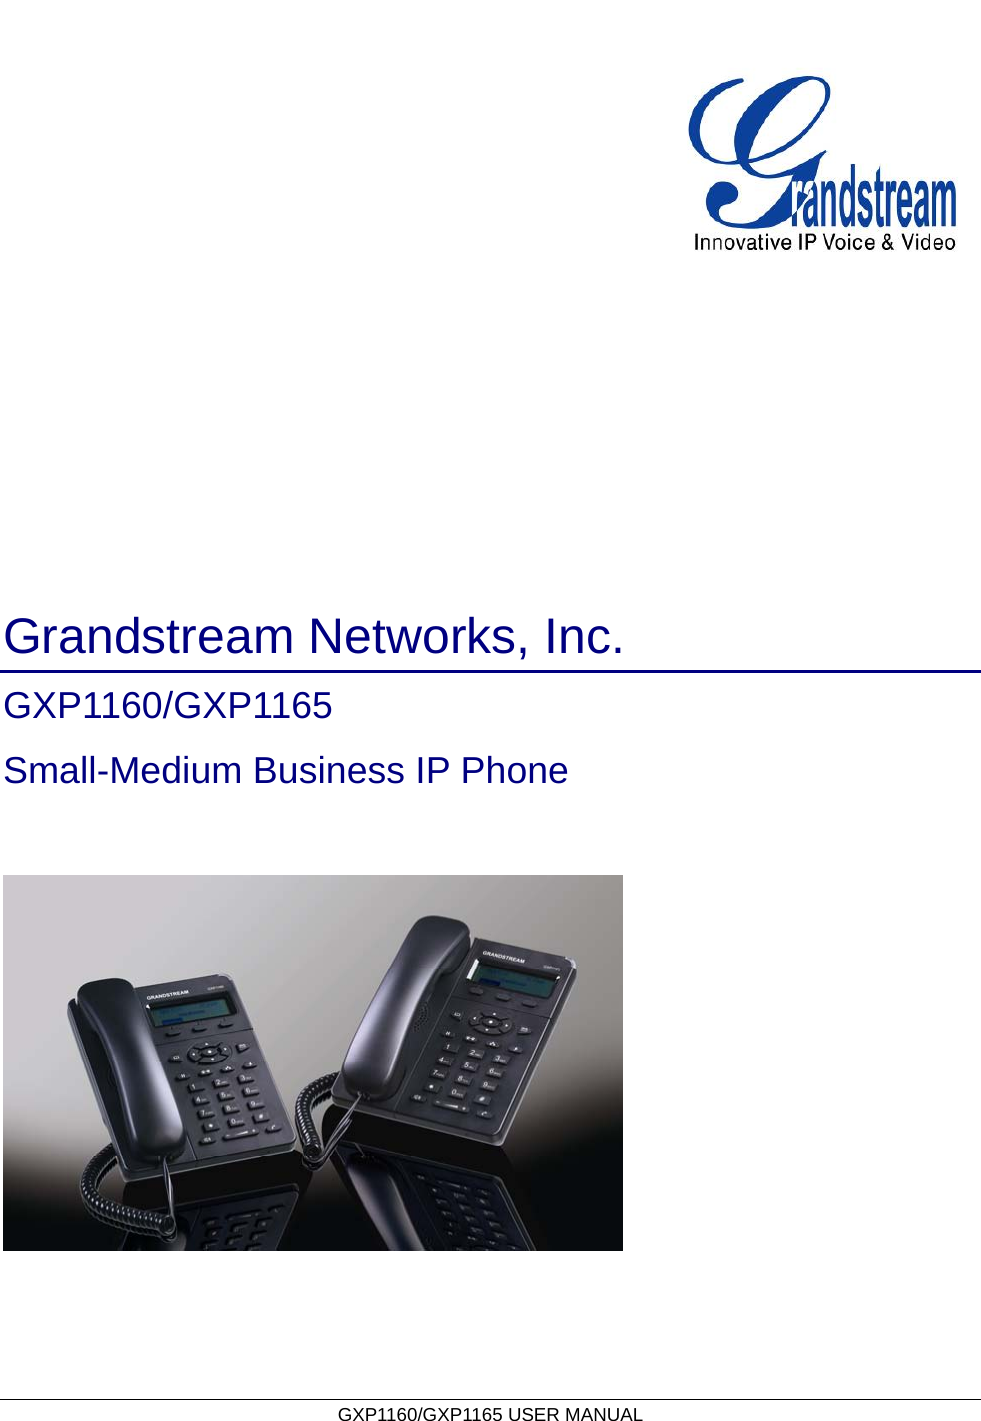   GXP1160/GXP1165 USER MANUAL                                               Grandstream Networks, Inc. GXP1160/GXP1165  Small-Medium Business IP Phone   